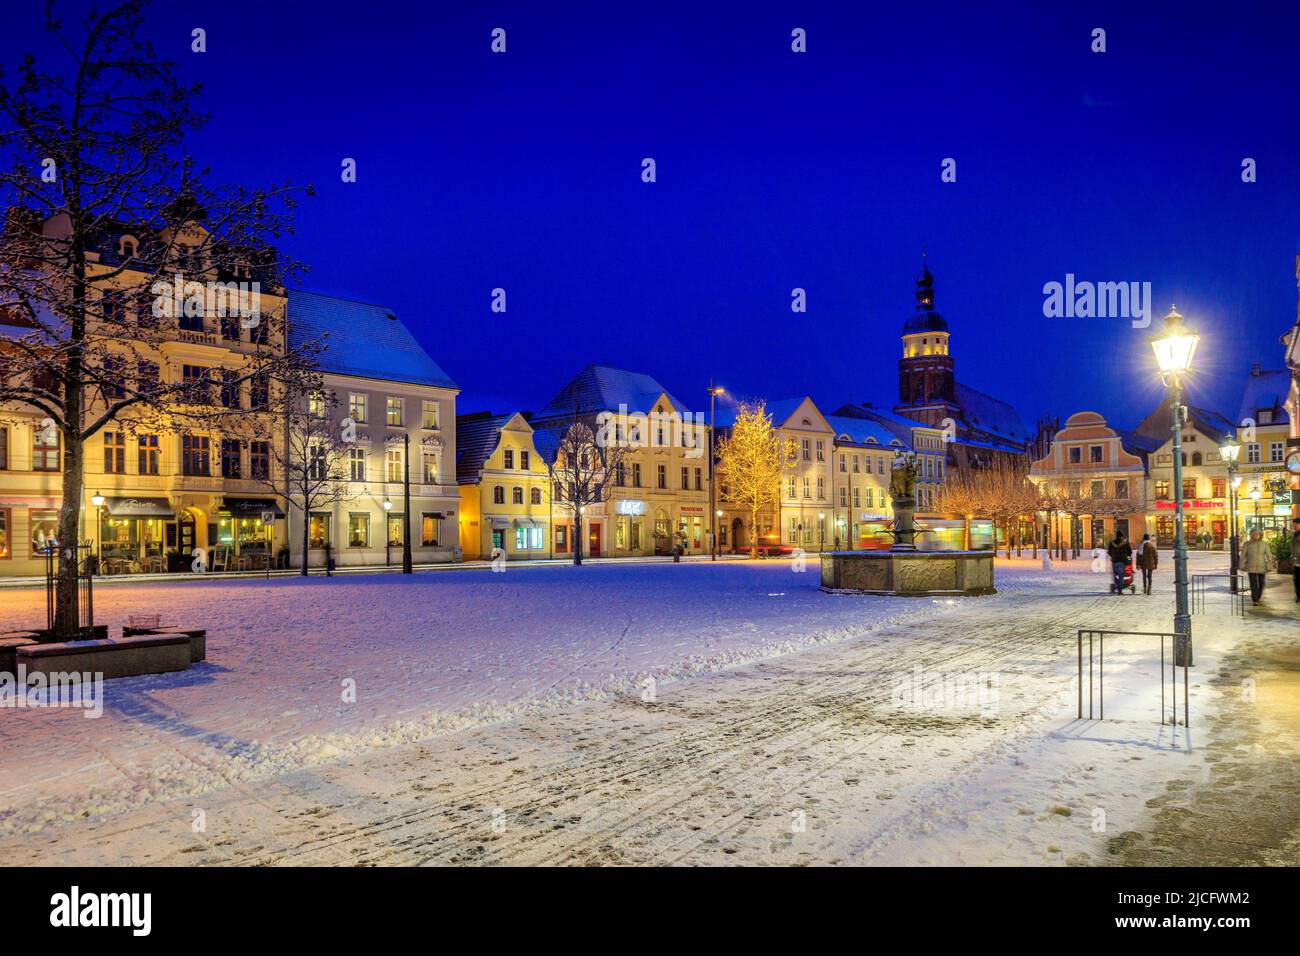 L'ambiance d'hiver sur l'Altmarkt Cottbus : le Cottbus Altmarkt forme encore un ensemble impressionnant en raison de son unité et de son uniformité relative. Banque D'Images